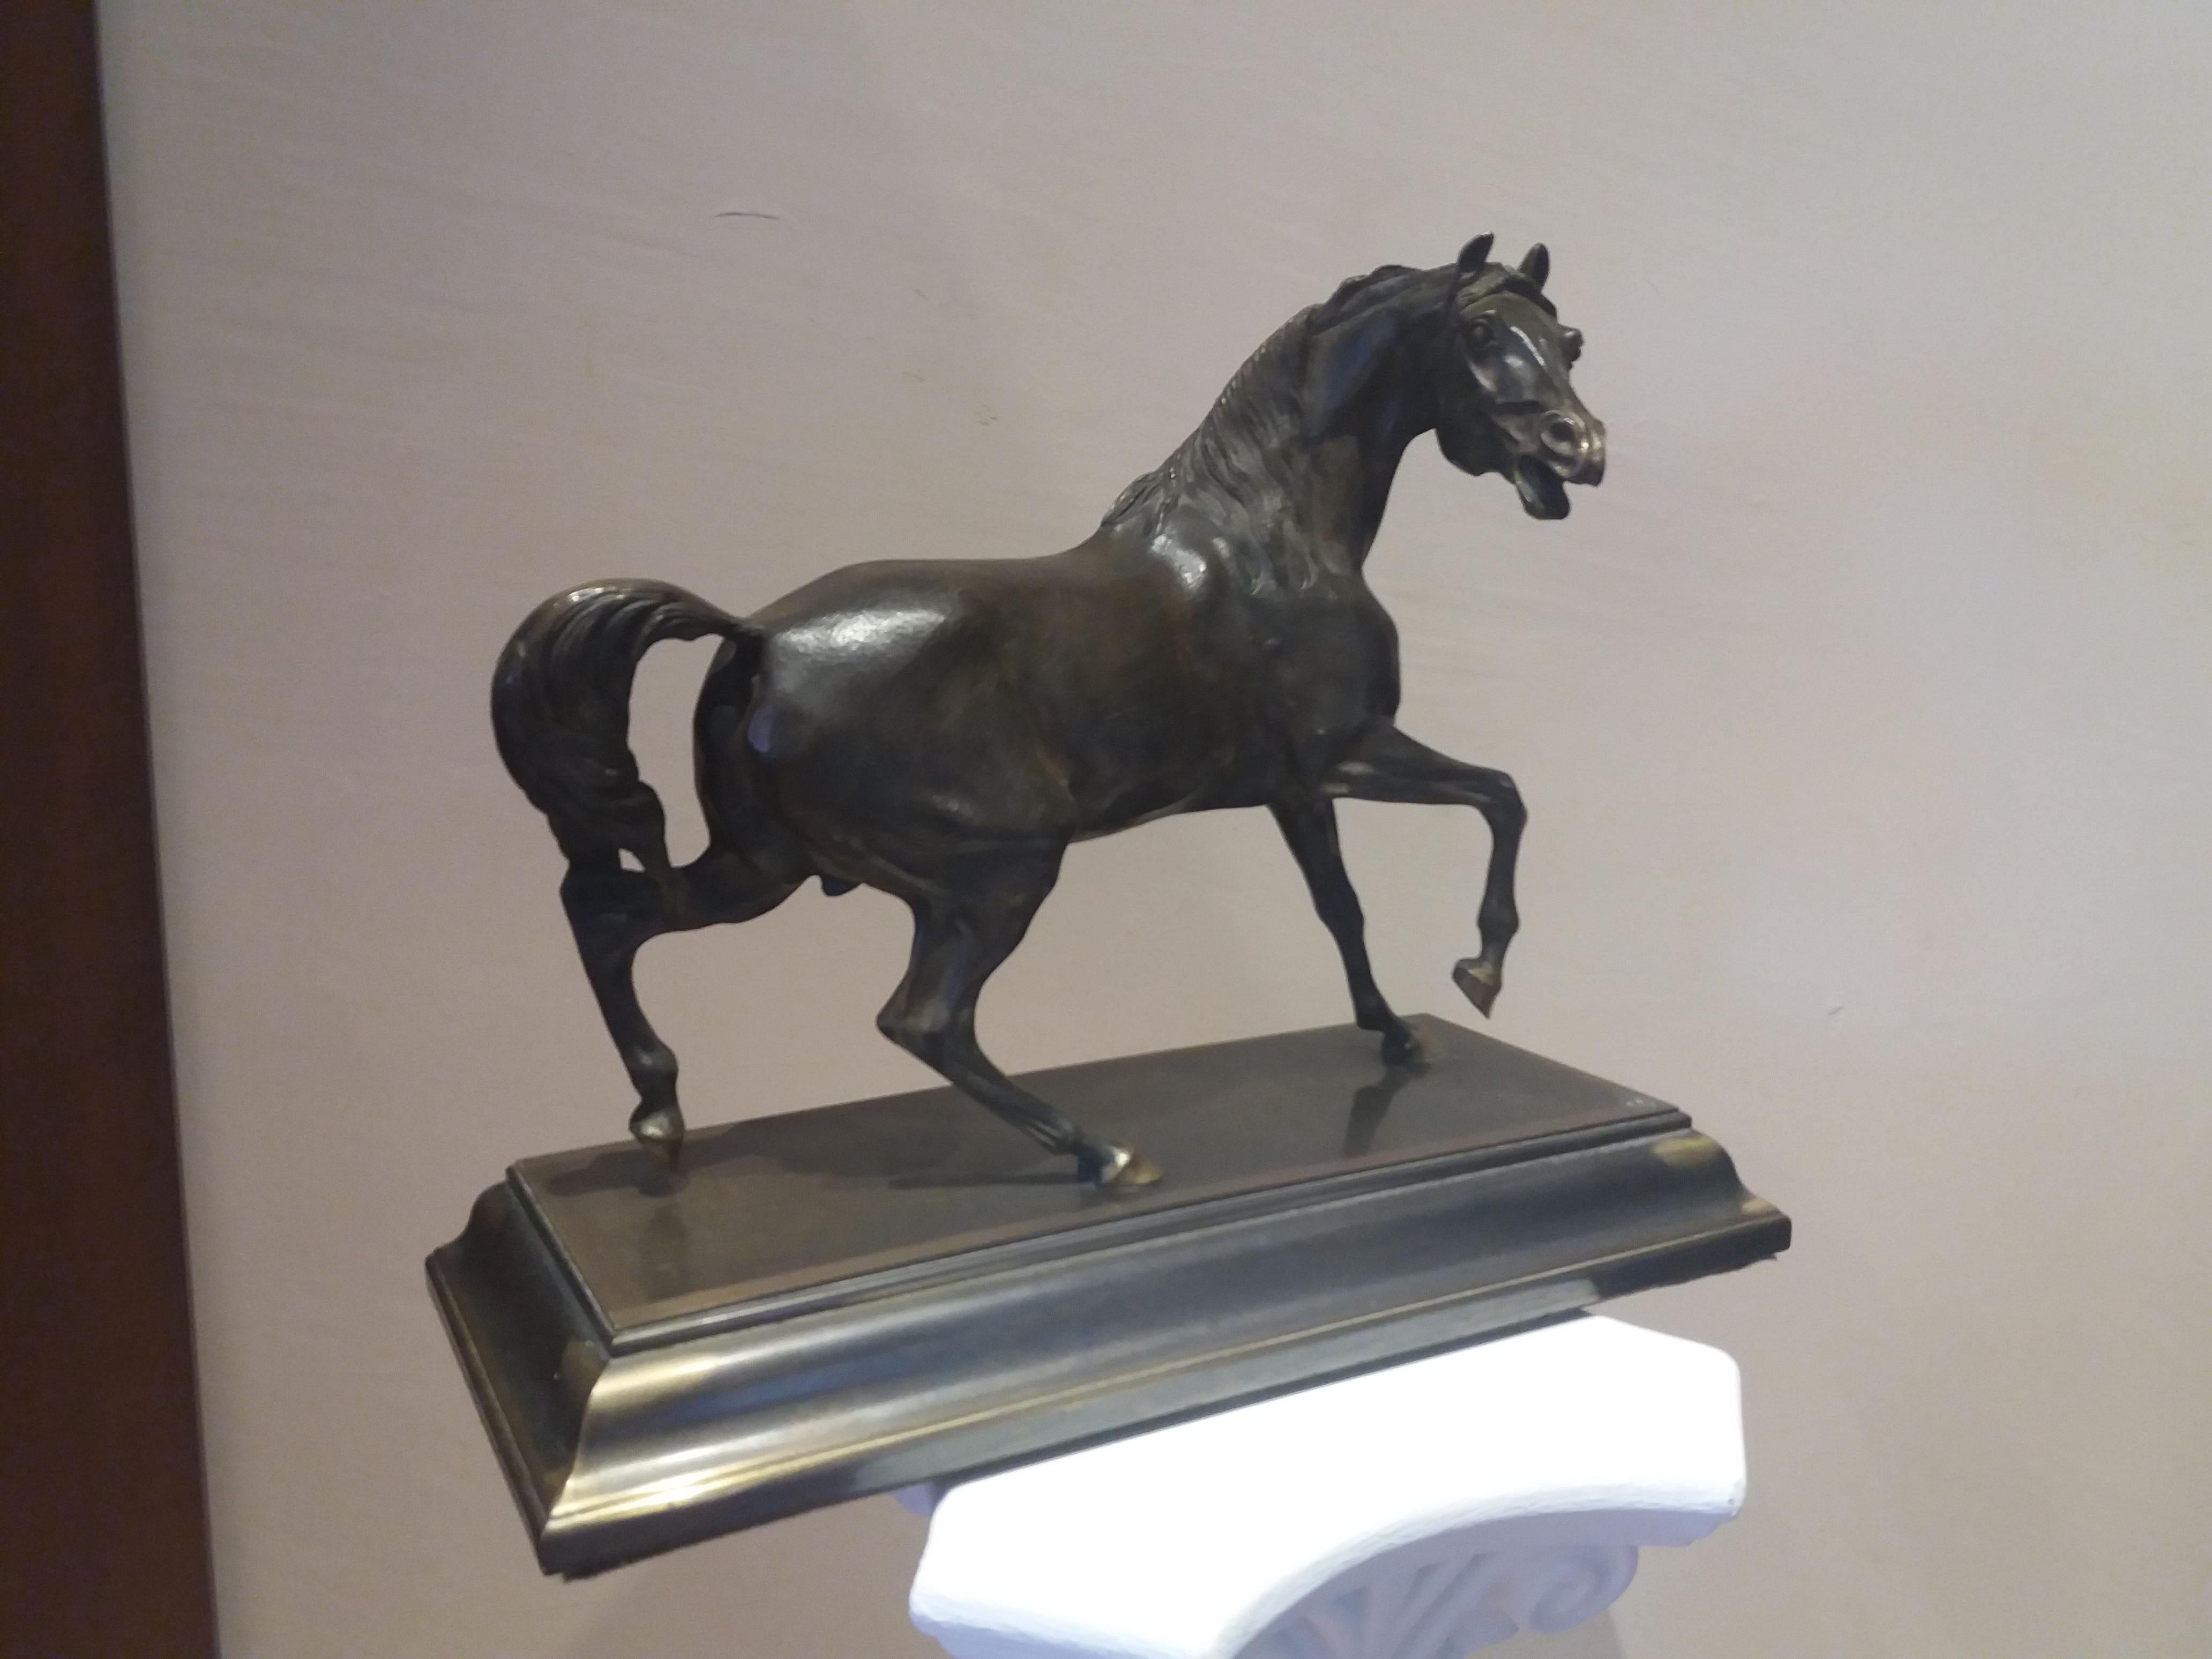  horse.  19th century    bronze sculpture - Sculpture by Unknown